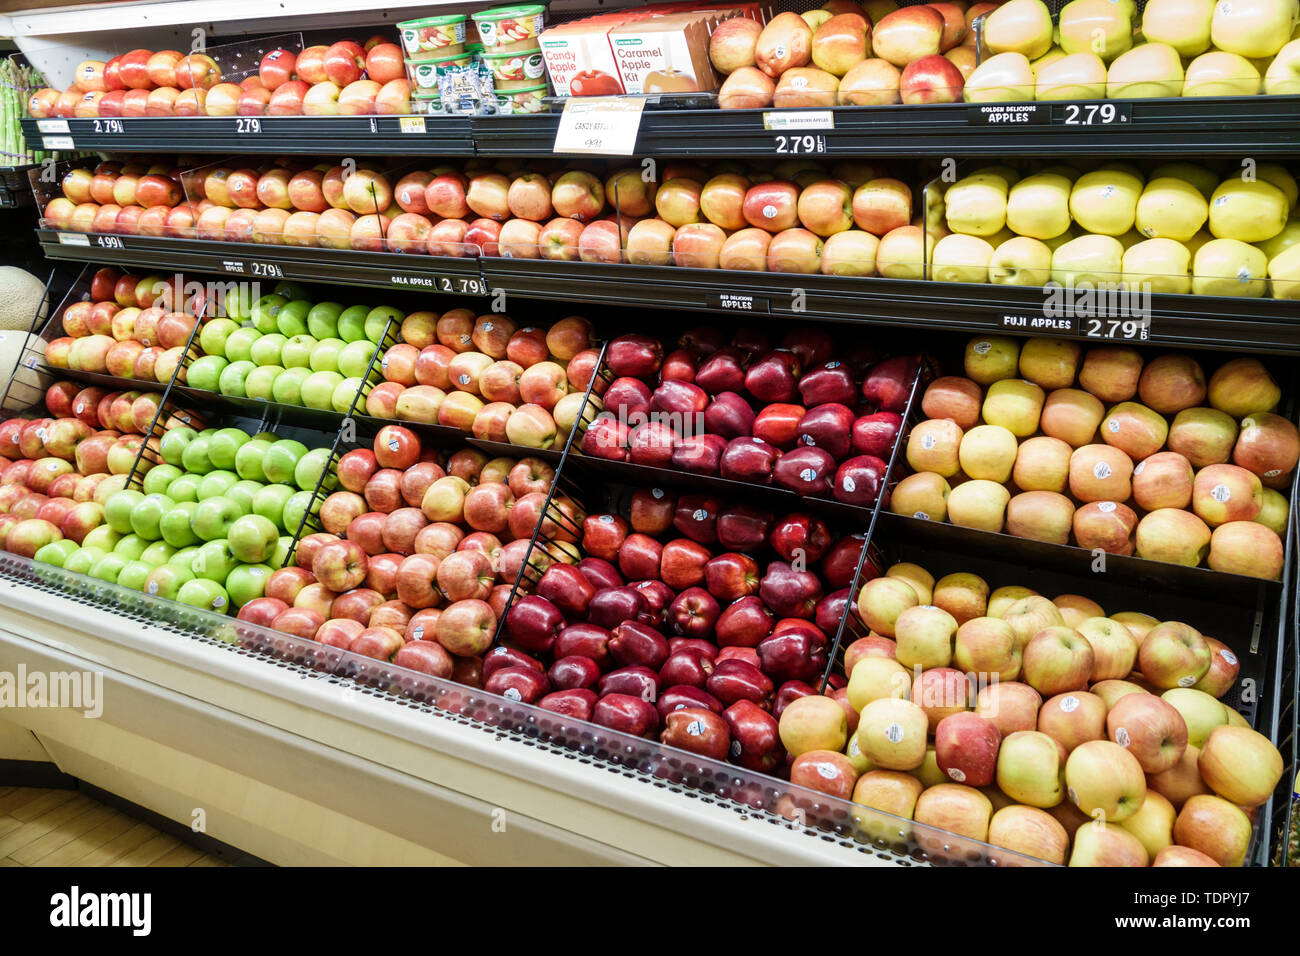 Sanibel Island Florida,Jerry's Foods,supermercato negozio di alimentari,interno,scaffali vendita esposizione,frutta corsia,mele,rosso,verde,Fuji,gala,deli dorato Foto Stock